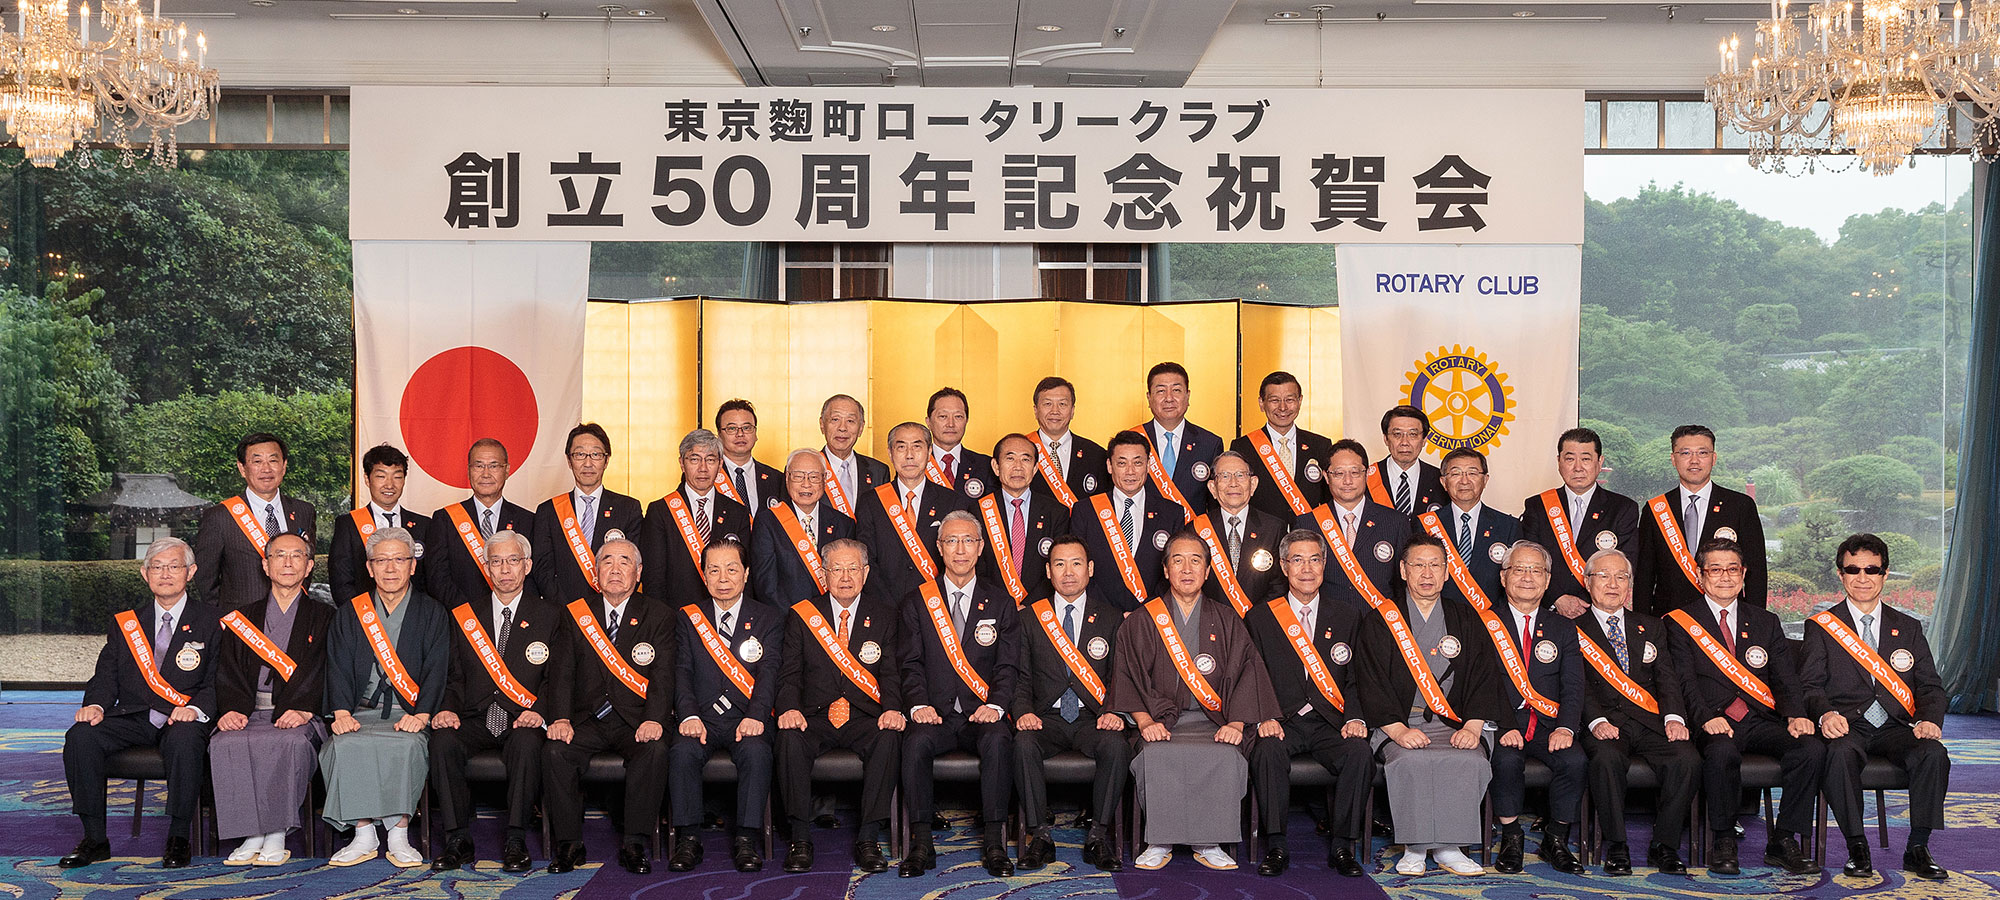 東京麹町ロータリークラブ 50周年記念祝賀会